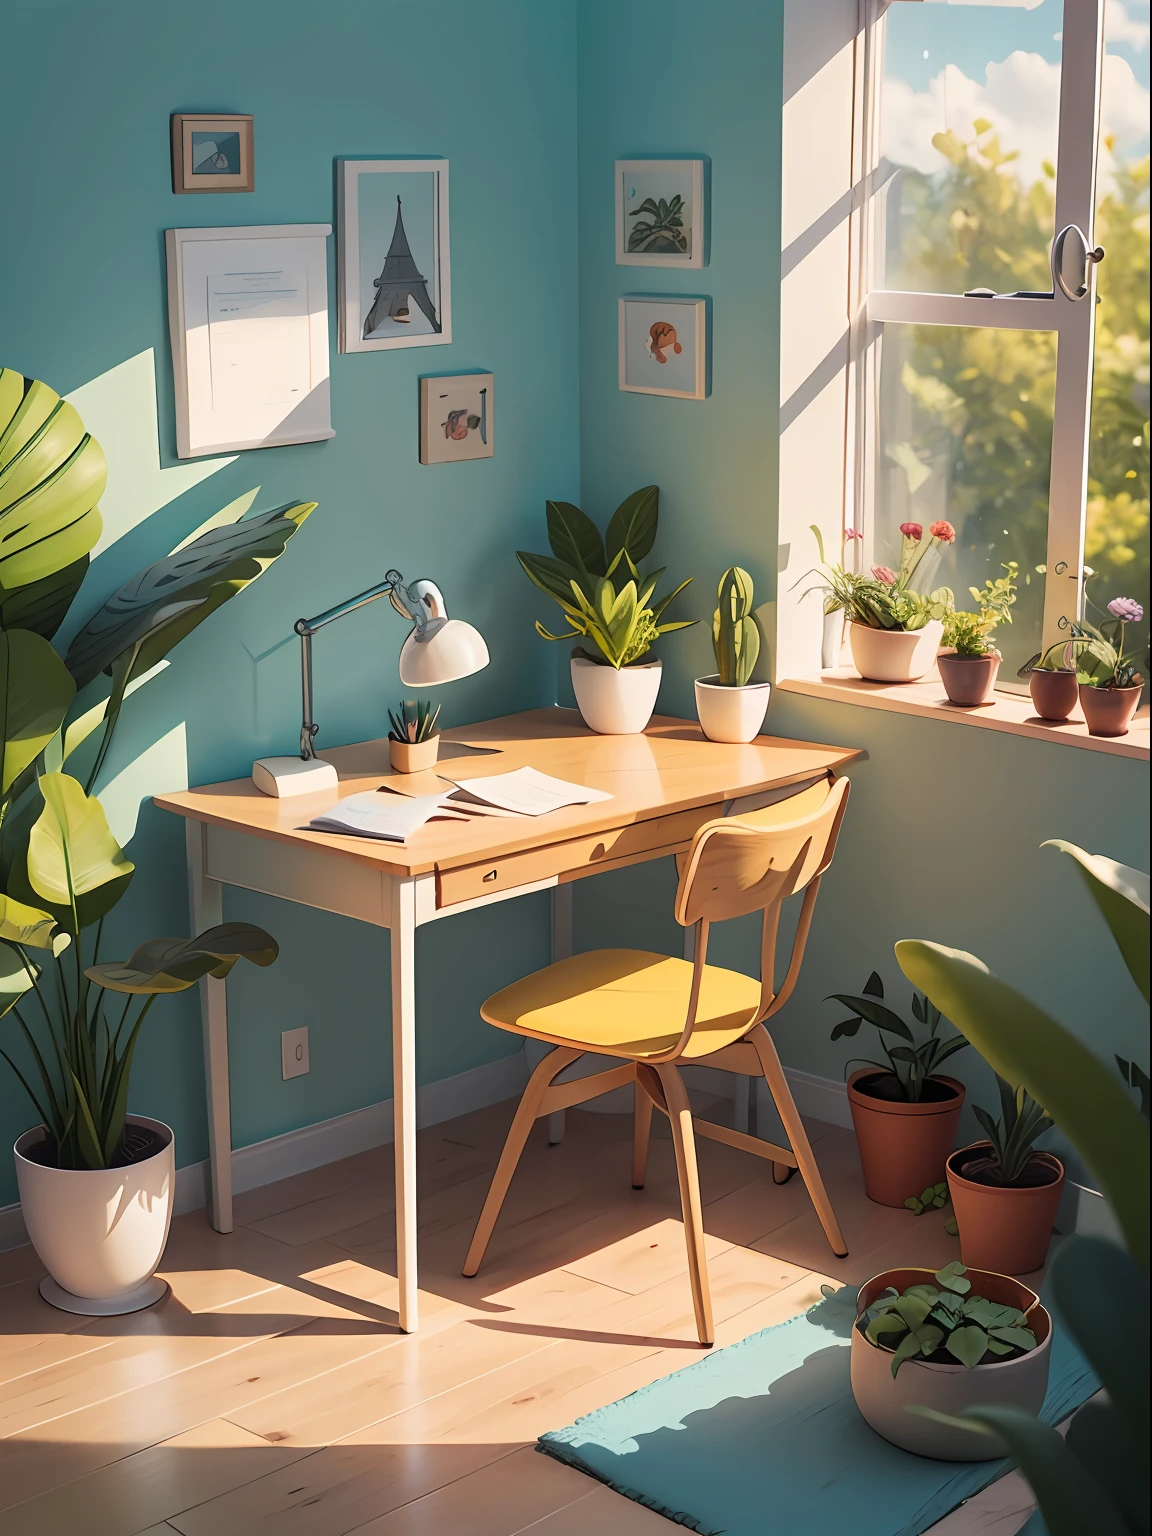 Ilustração de mesa desenhada em estilo cartoon. Adicione elementos naturais, Como plantas e flores, E use uma paleta de cores suaves para criar uma atmosfera relaxante.